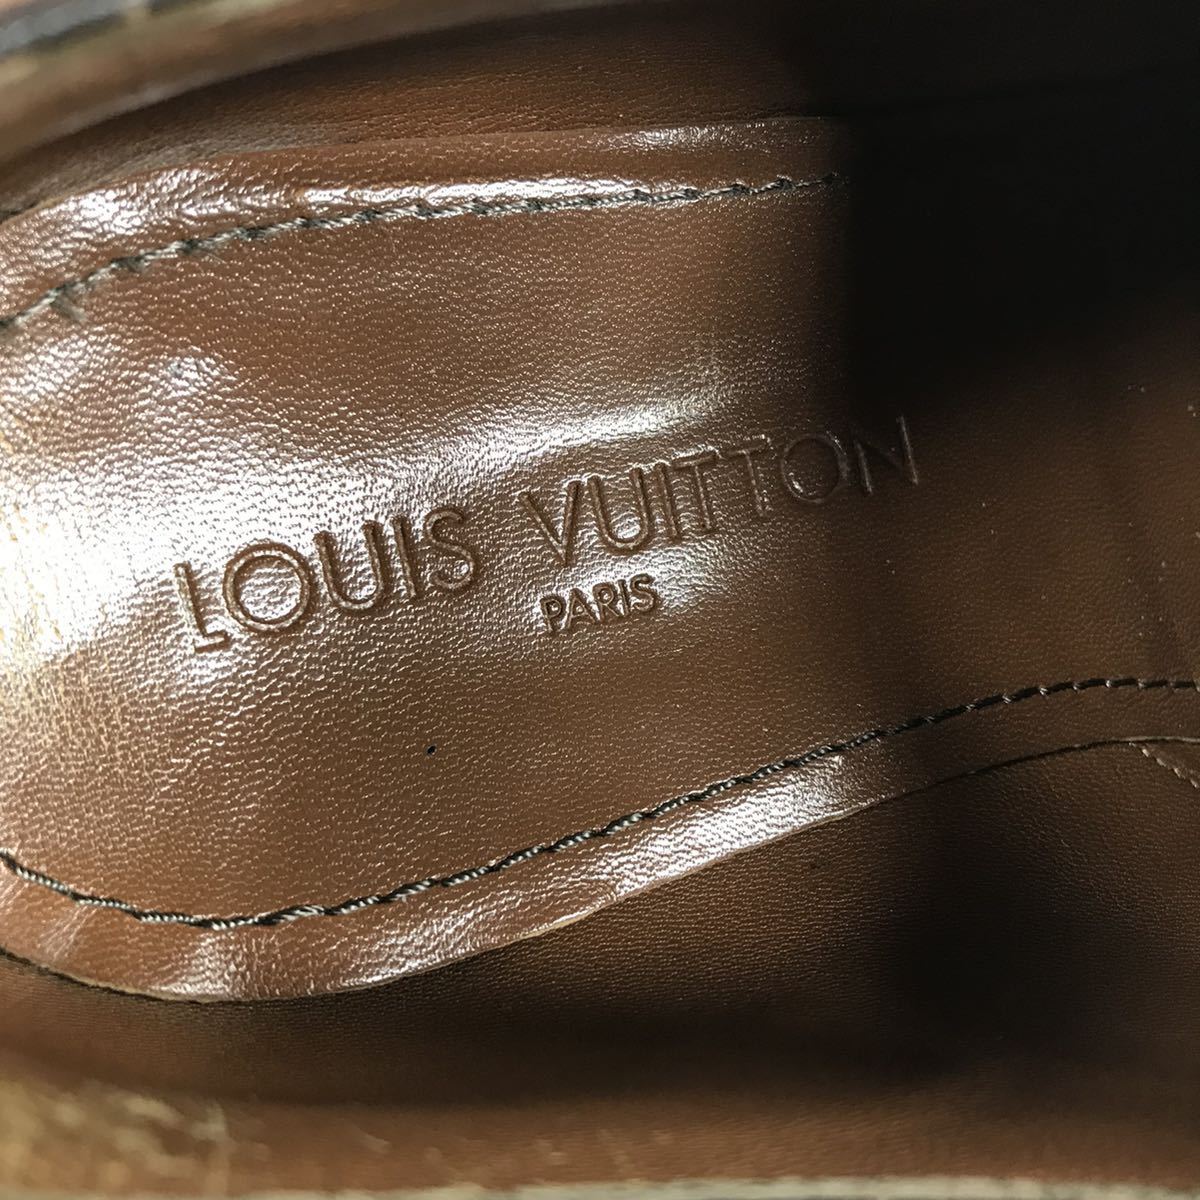 【ルイヴィトン】本物 LOUIS VUITTON 靴 25.5cm 茶 ビジネスシューズ 外羽根式 本革 レザー 男性用 メンズ イタリア製 6 1/2_画像9